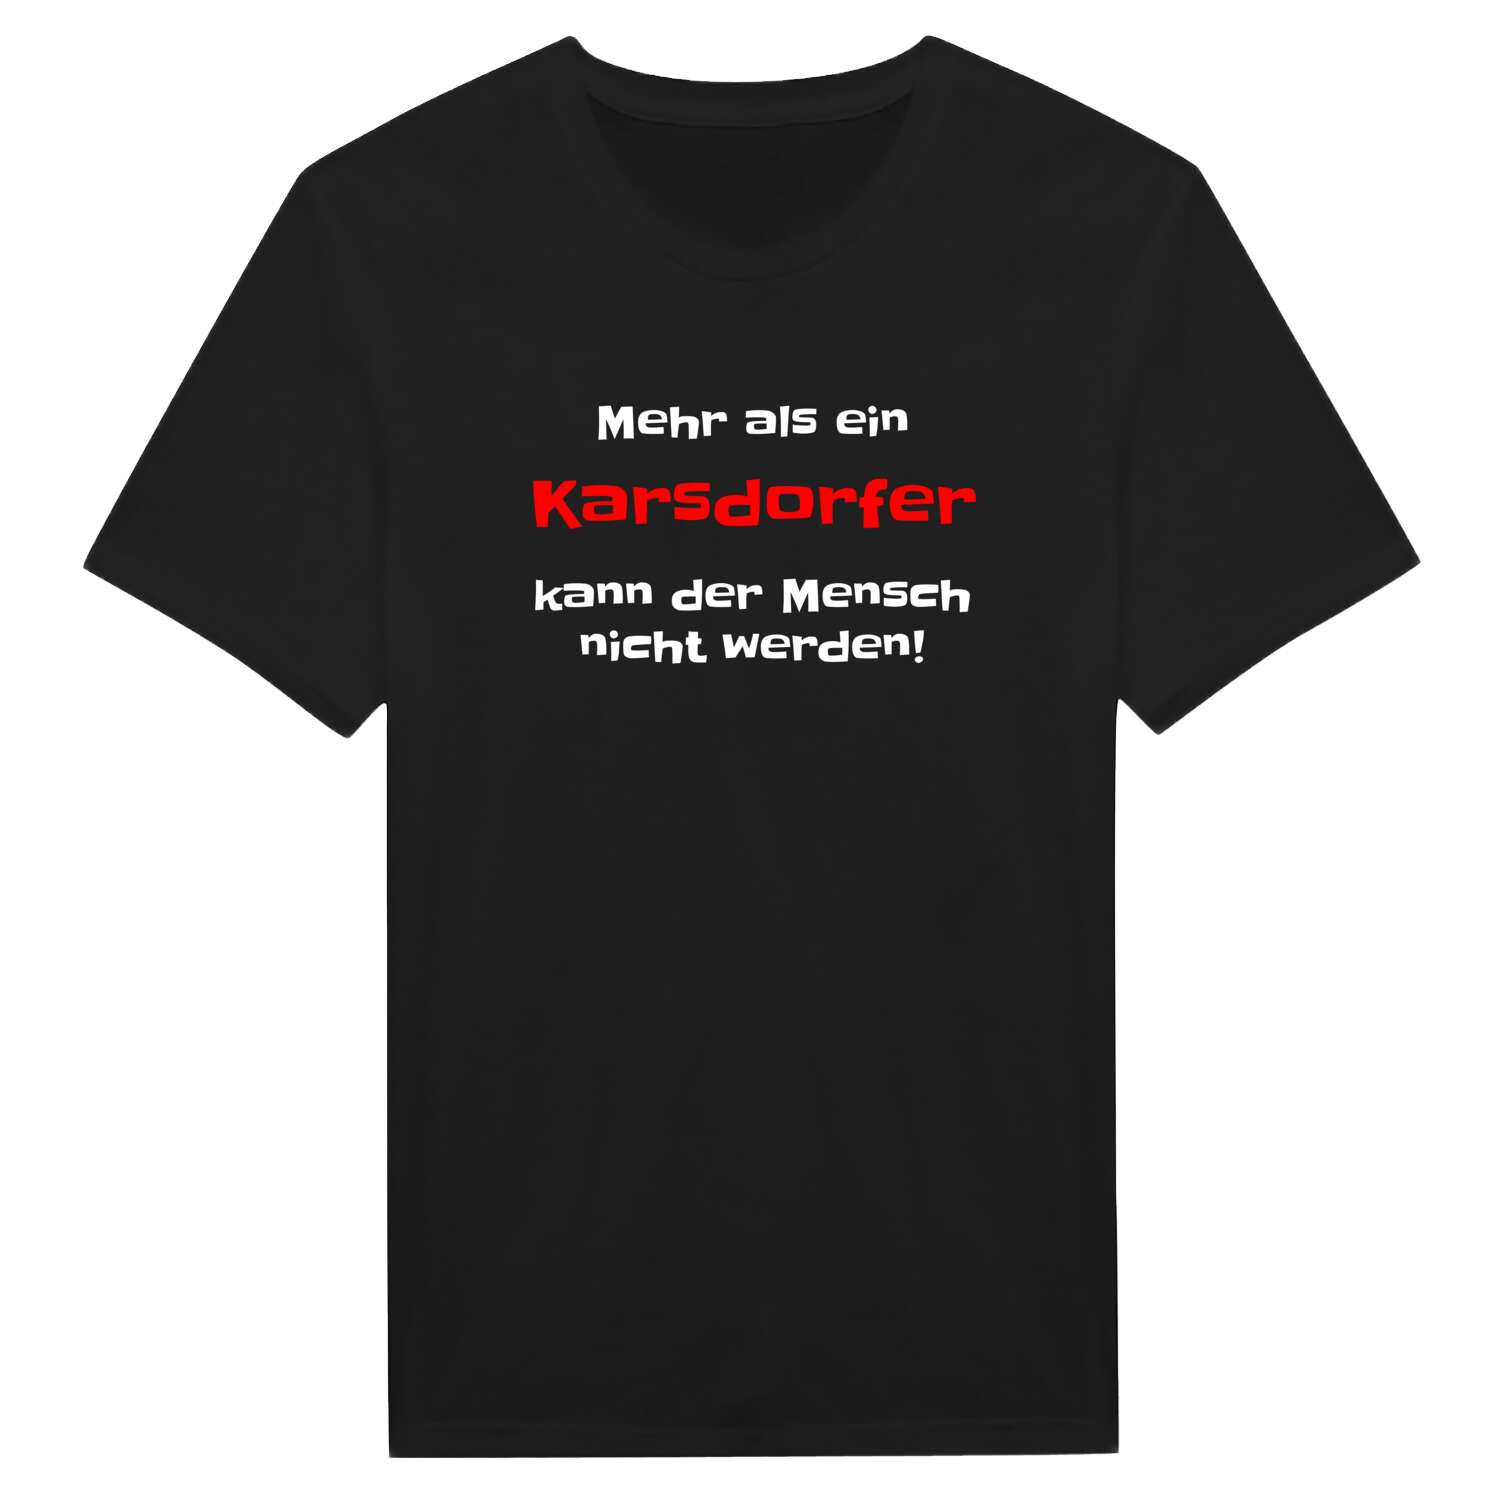 Karsdorf T-Shirt »Mehr als ein«